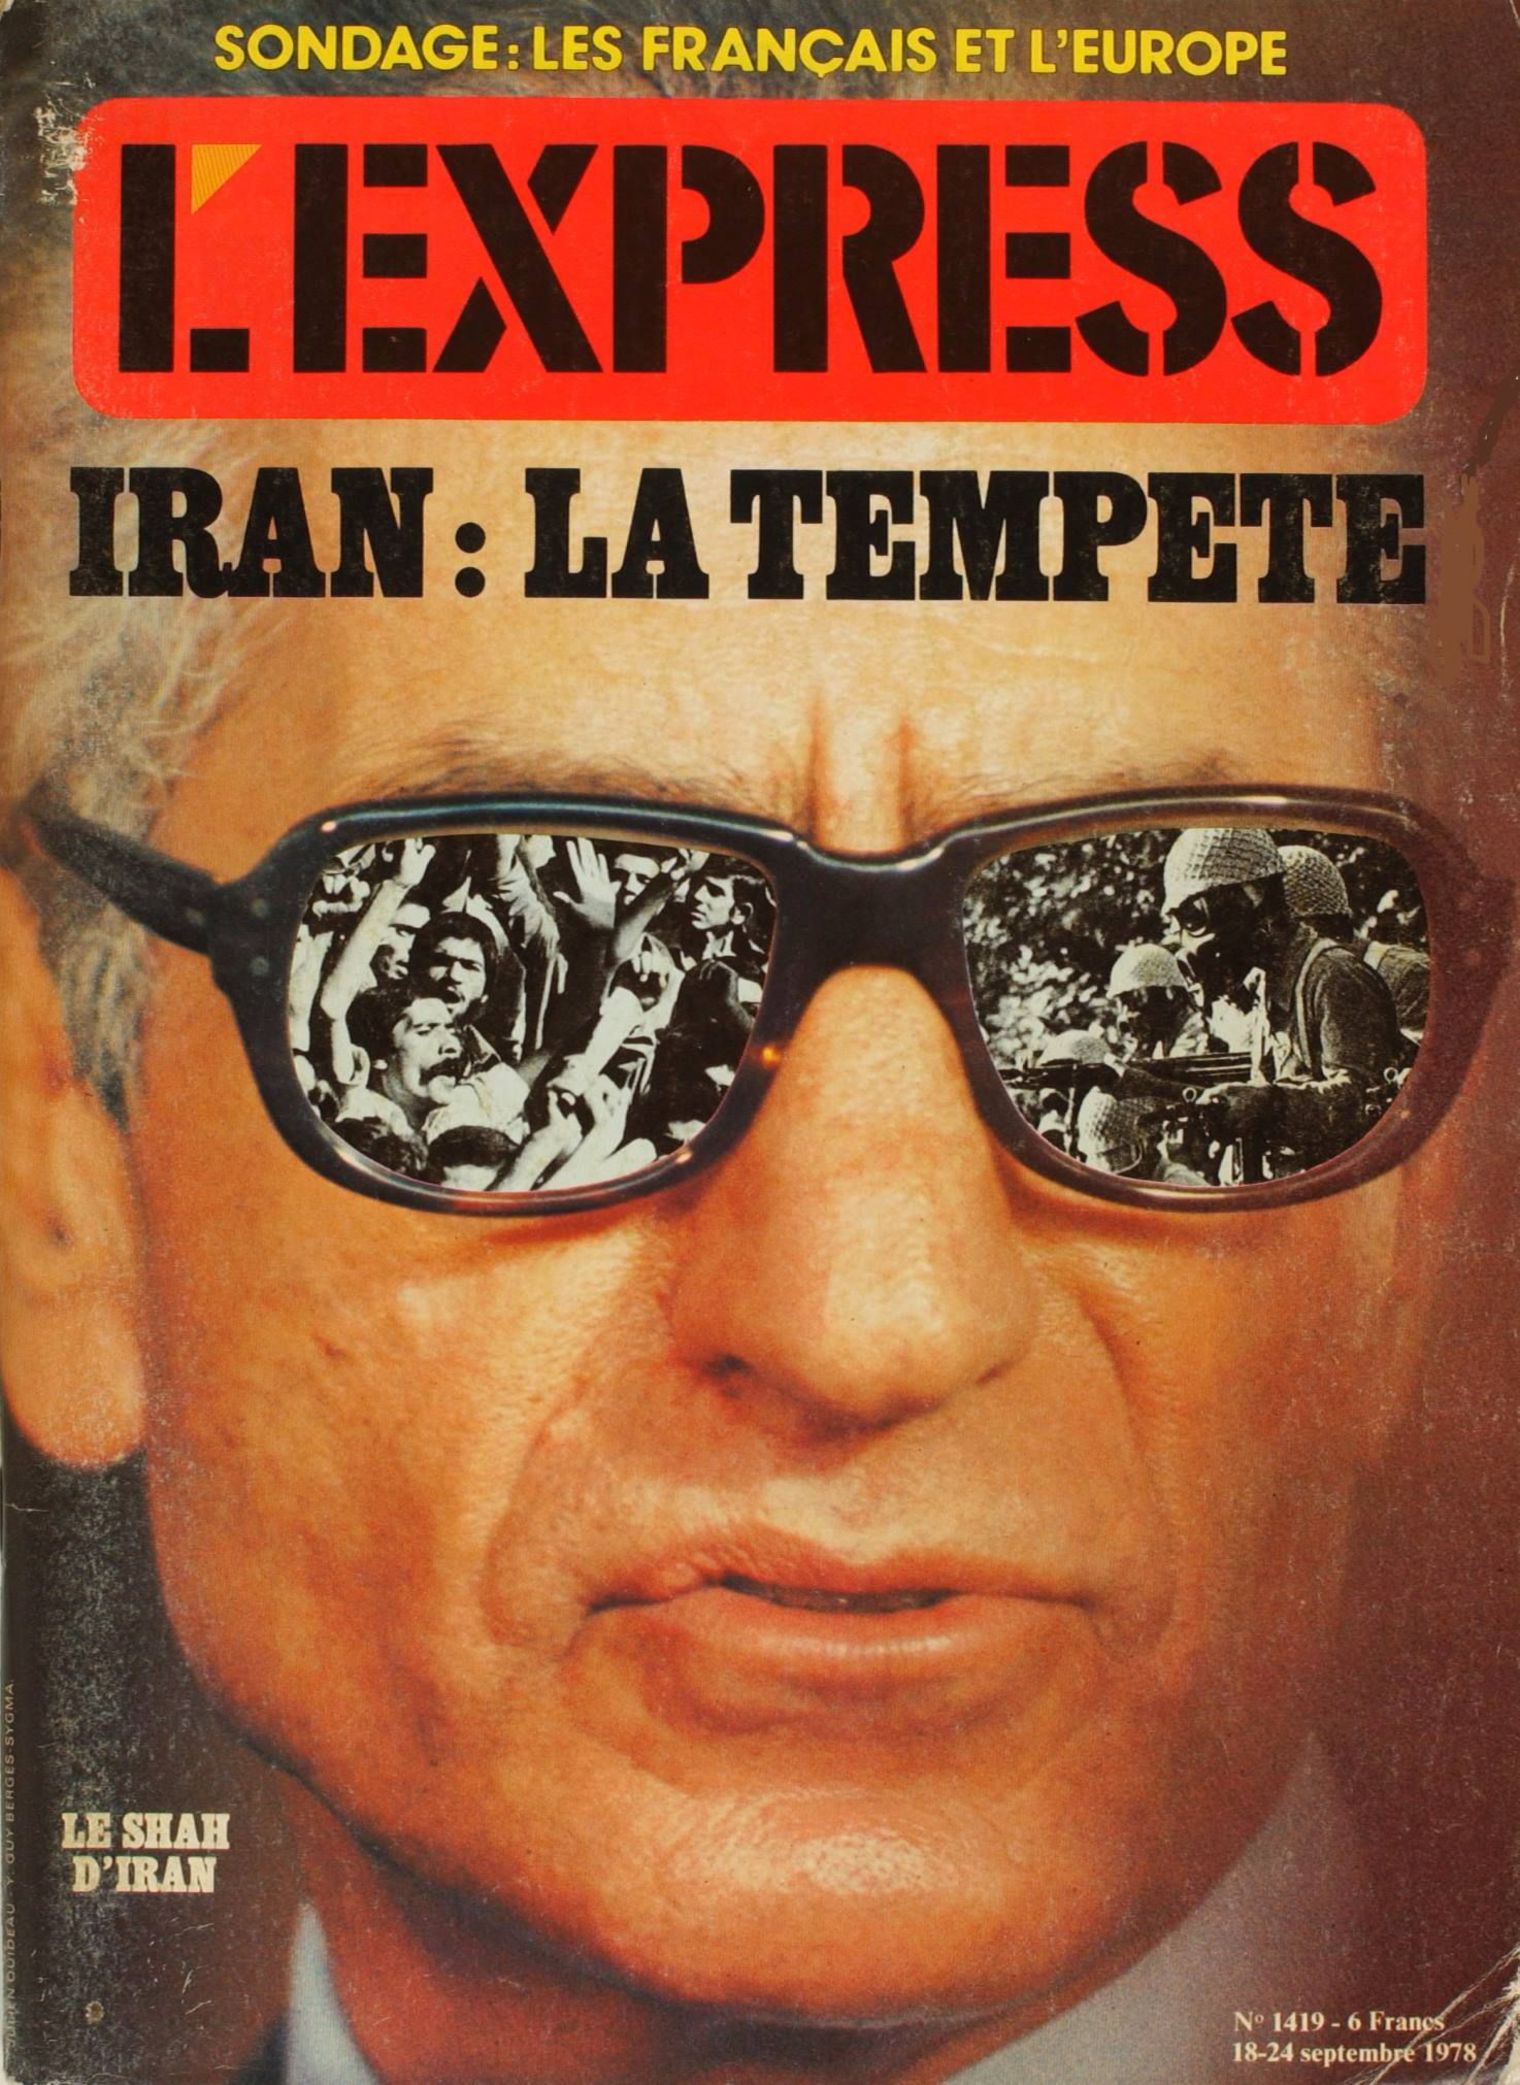 Couverture de « L'Express » du 18 septembre 1978, numéro 1419.